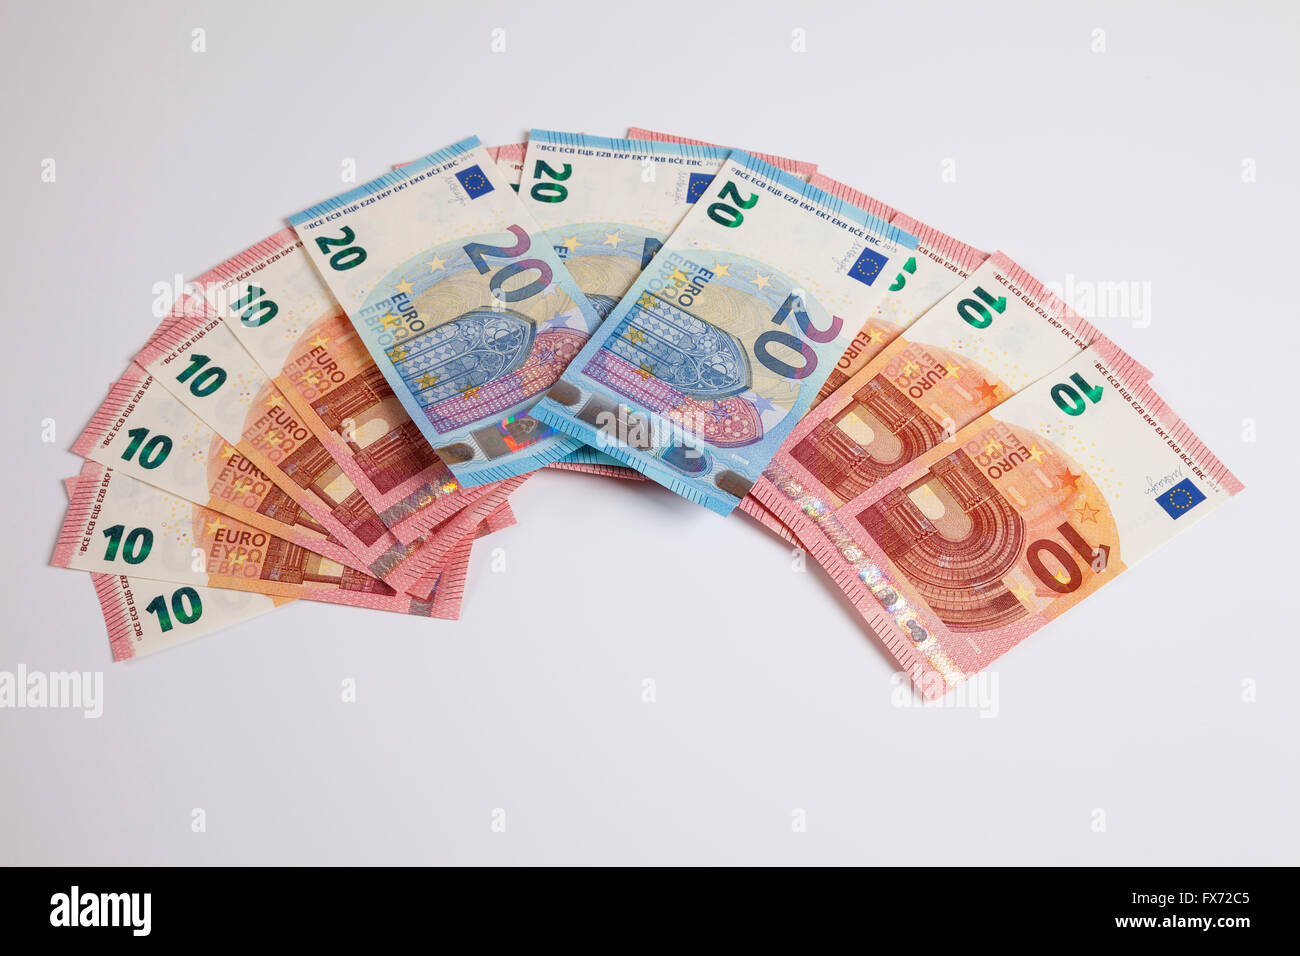 Fan of bank notes, twenty Euros, release date 25/11/2015, ten Euros, release date 23/09/2014 Stock Photo